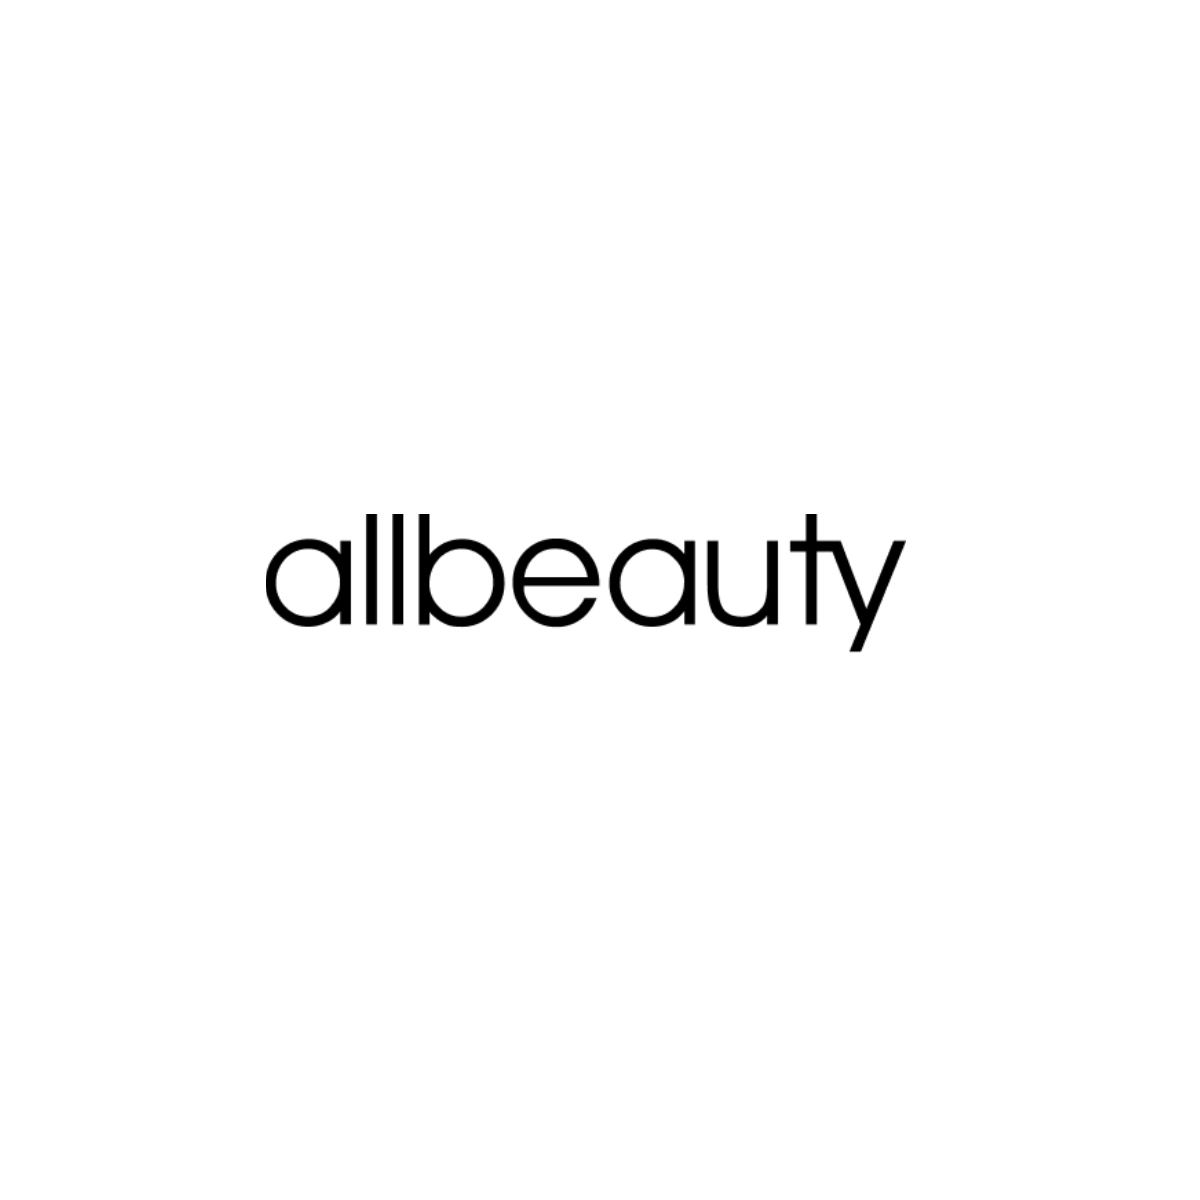 www.allbeauty.com